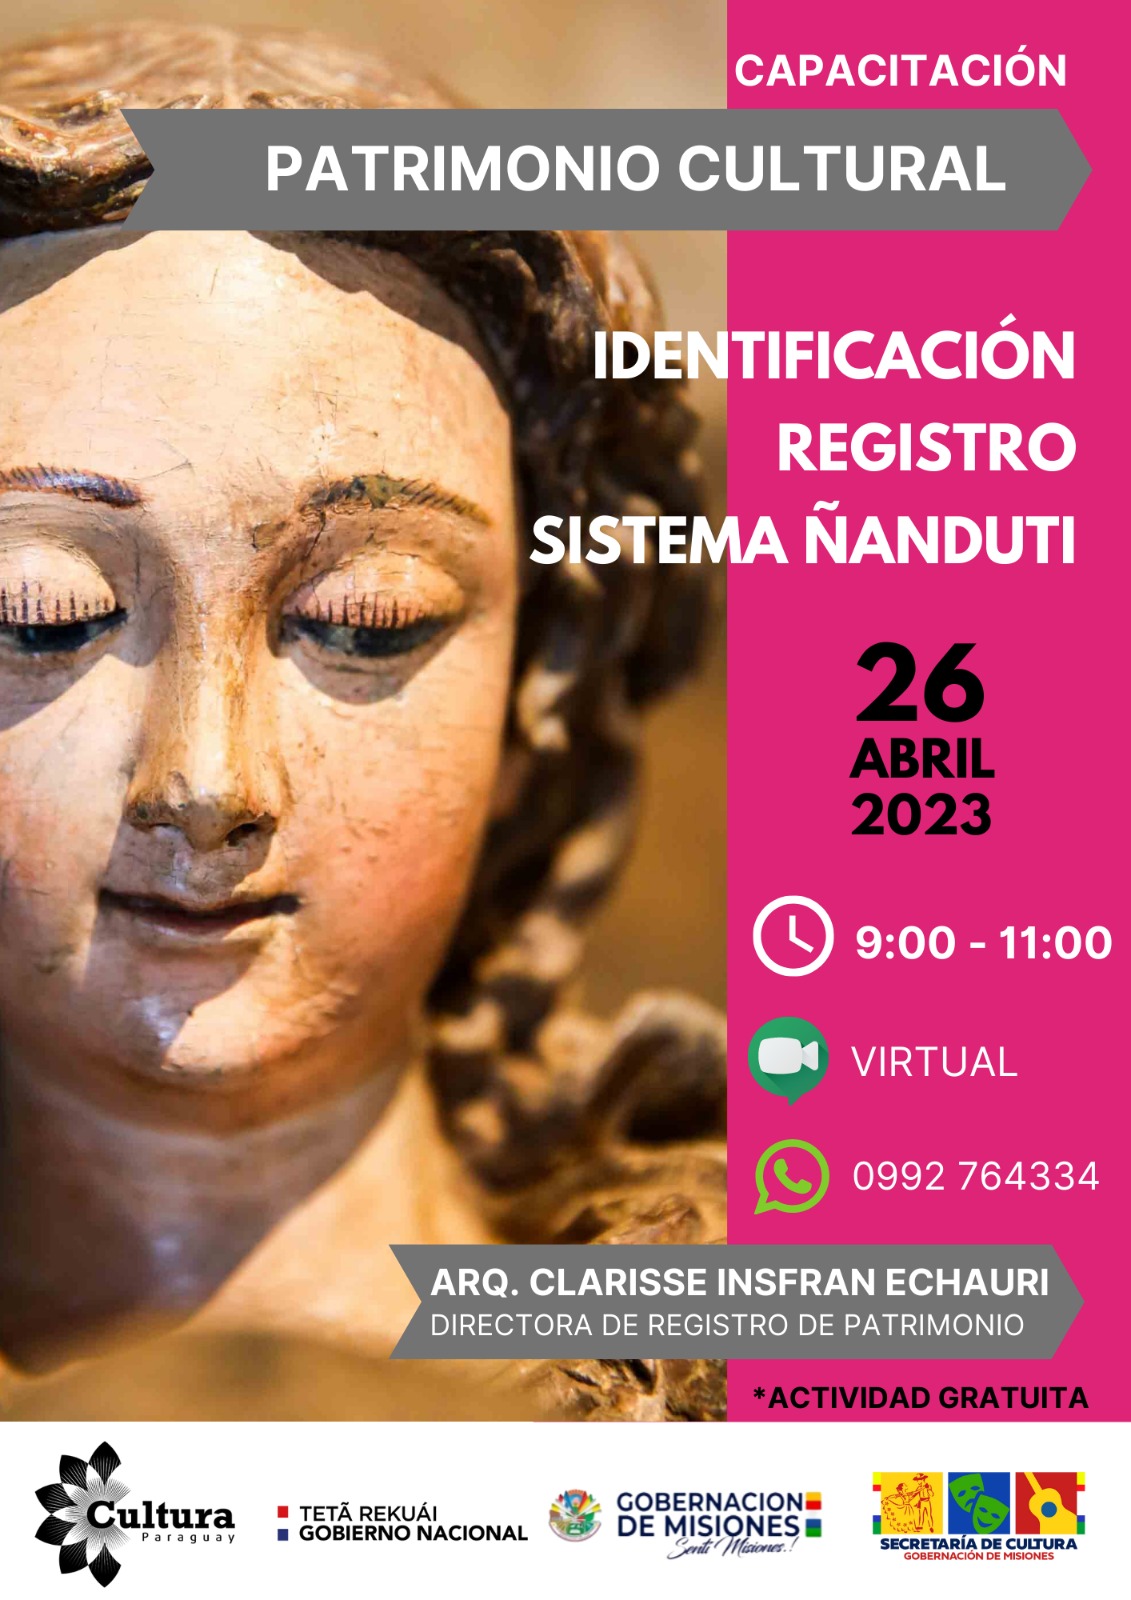 Patrimonio cultural: la SNC realizará capacitación sobre la identificación y el registro en el Sistema Ñanduti imagen